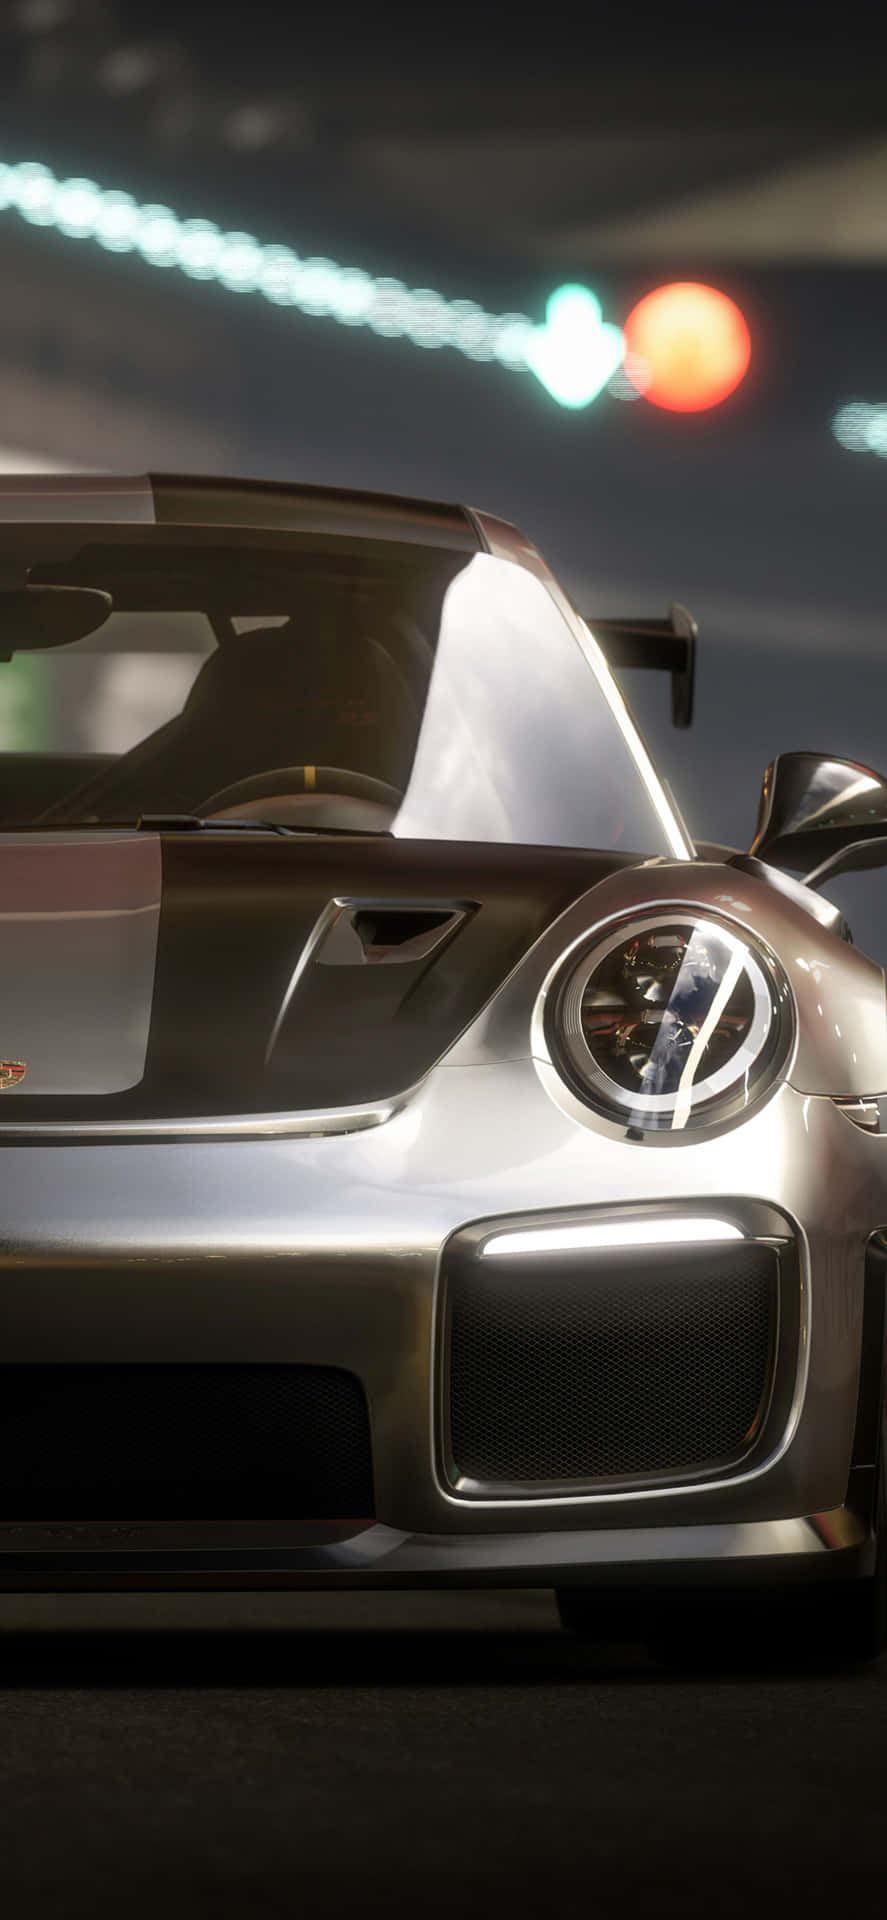 Iphonex Bakgrund Med Porcshe 911 Och Forza Motorsport 7.